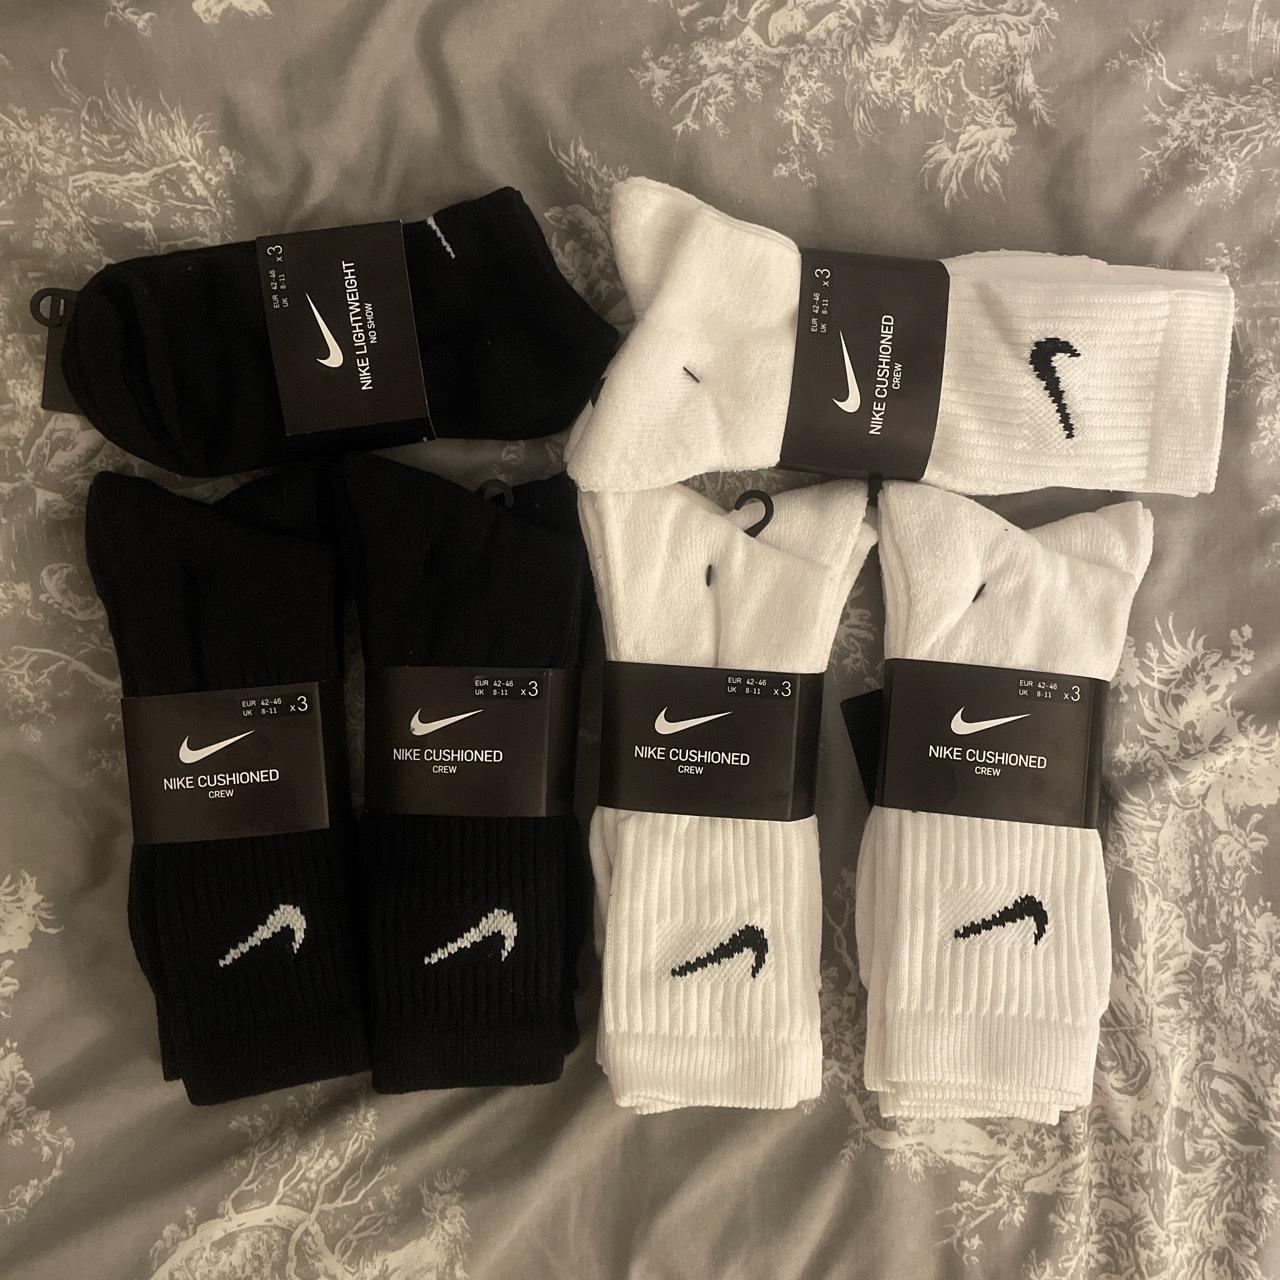 Men White socks EUR- 42-46 UK- 8-11 Black socks EUR-... - Depop